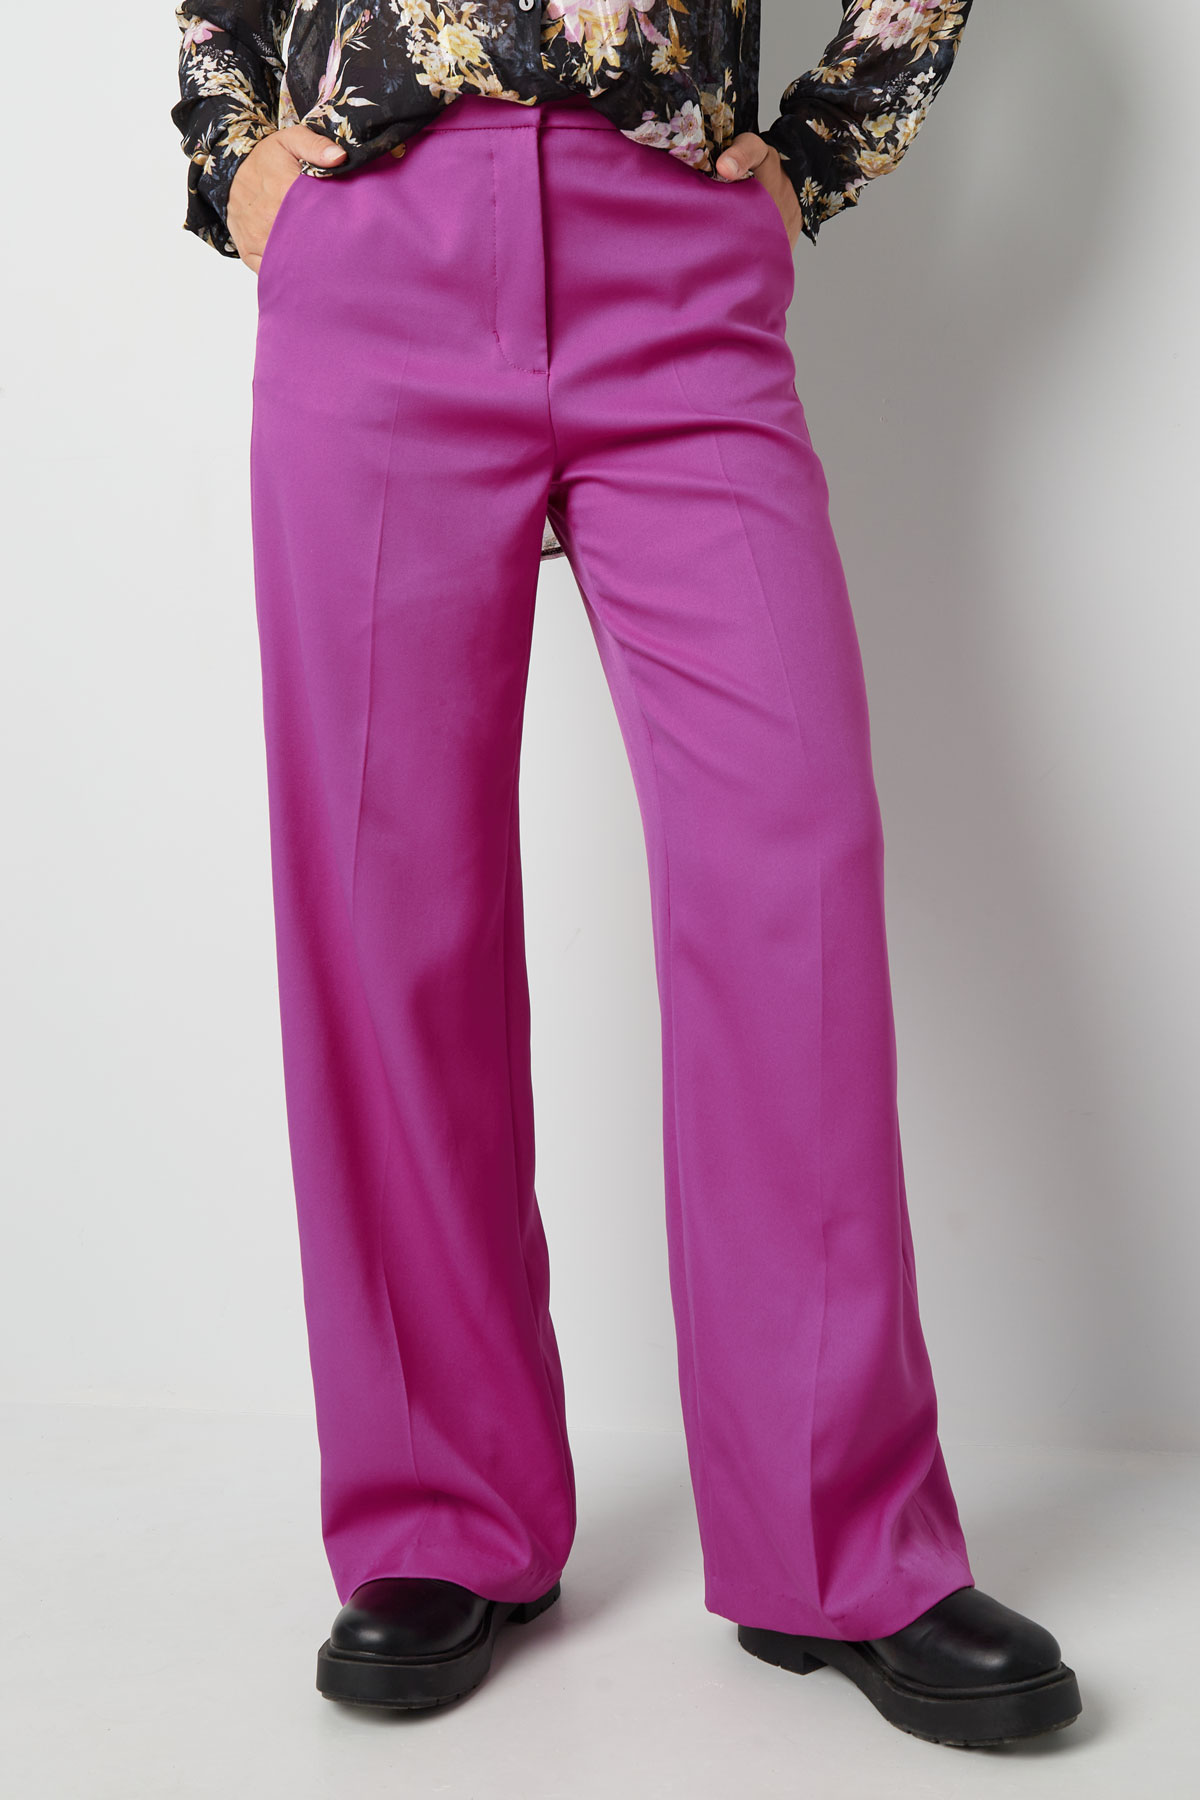 Pantalón plisado - violeta h5 Imagen2